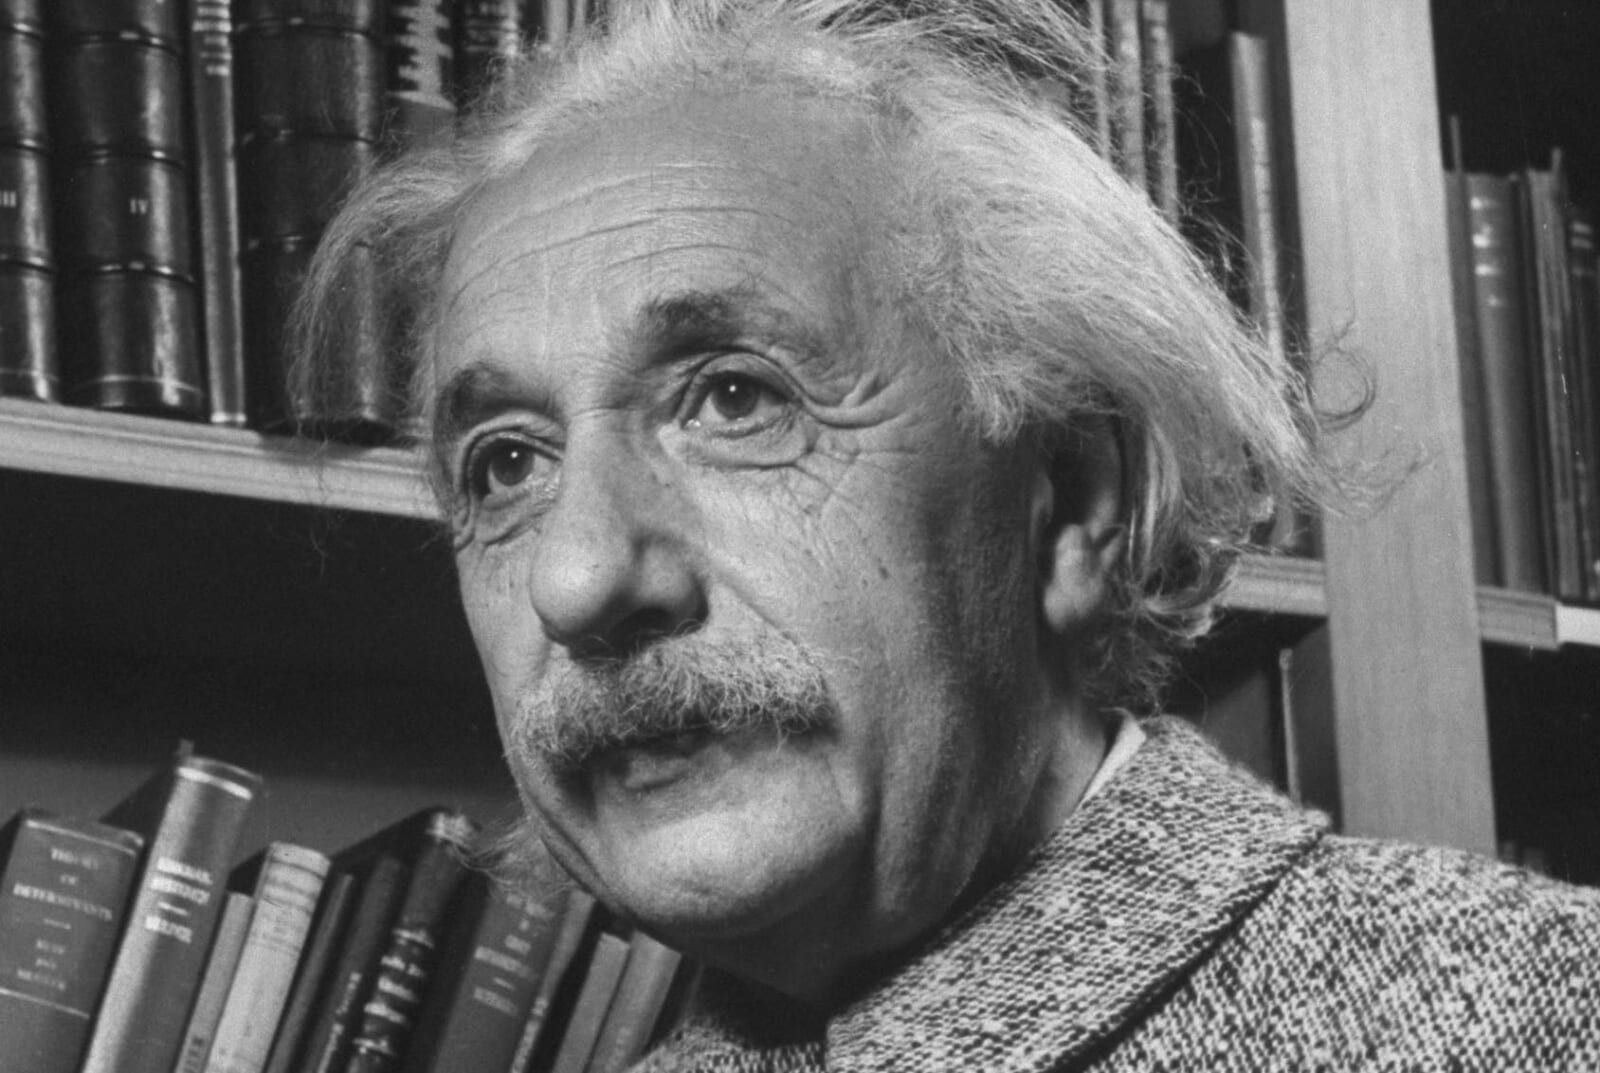 It's Ok If They Don't Understand - Albert Einstein Quotes